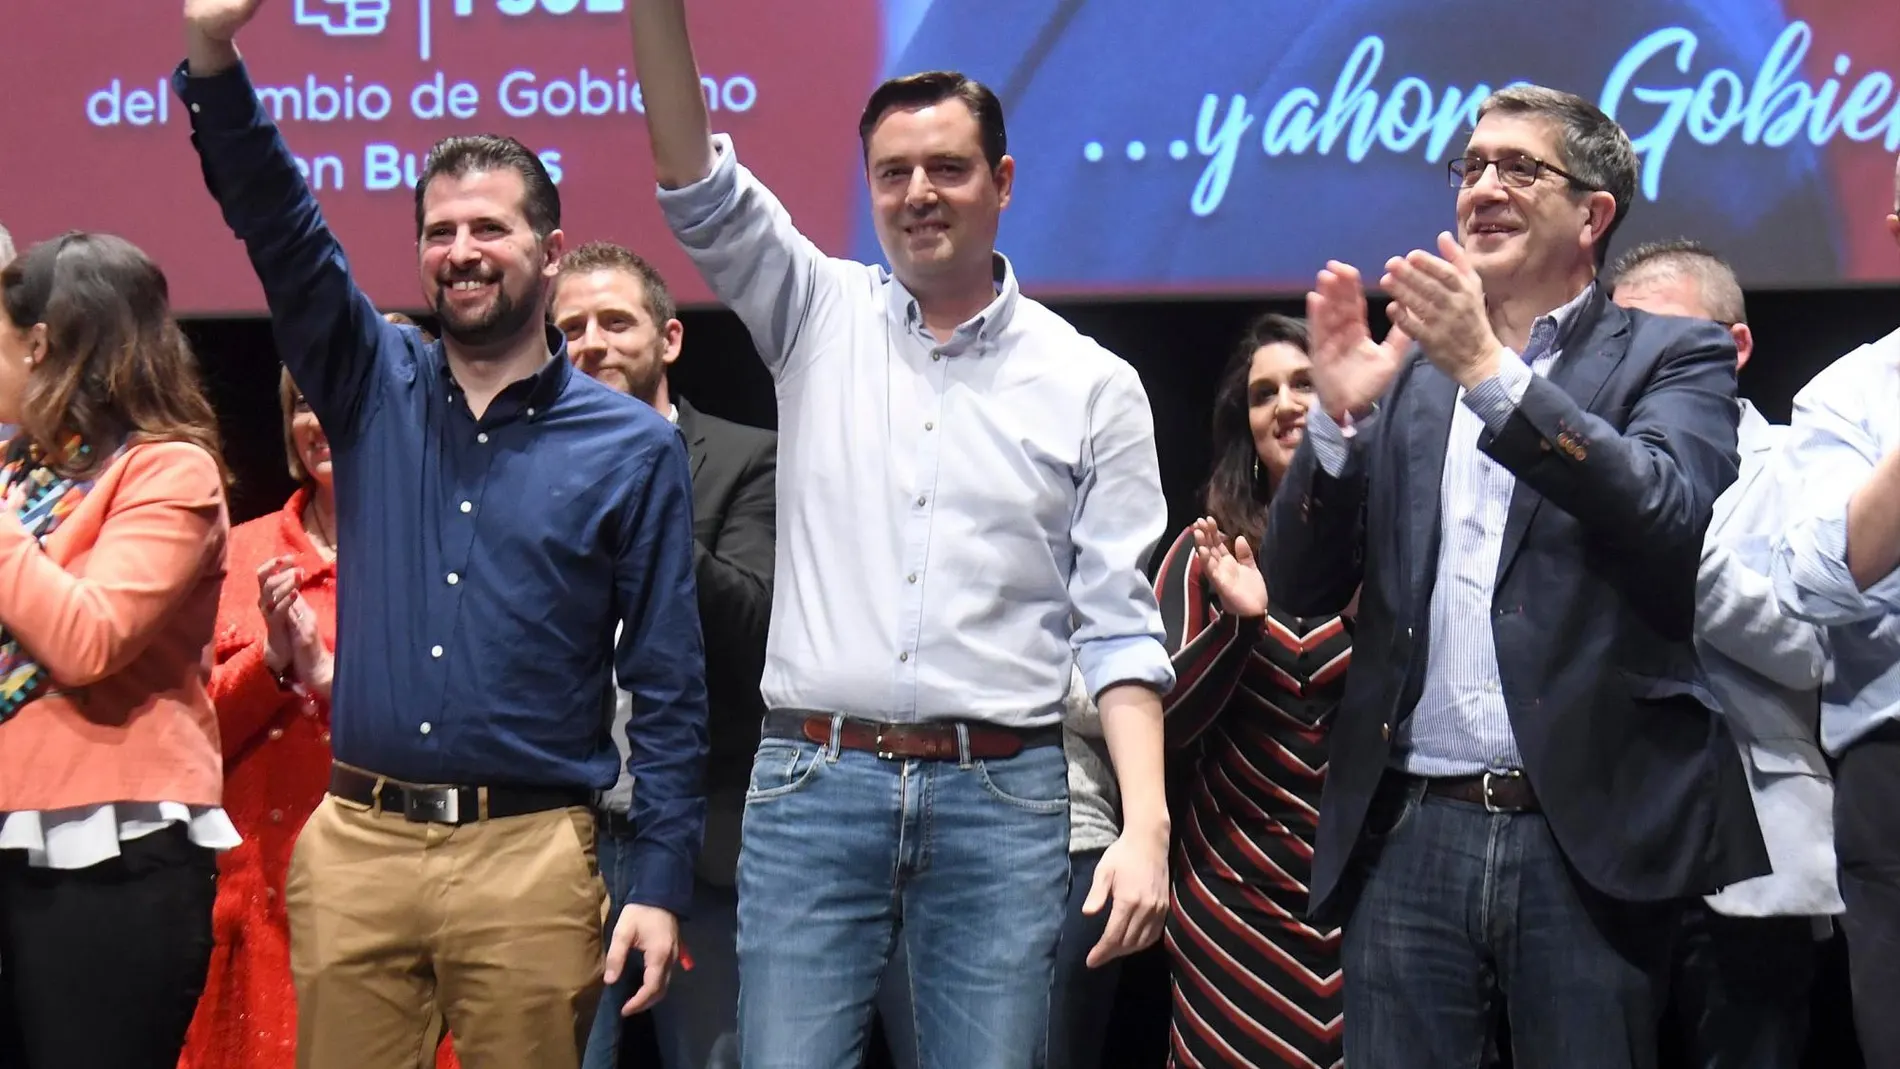 El candidato a la Alcaldía de Burgos, Daniel de la Rosa, junto al secretario general del PSCyL, Luis Tudanca, y el exlehendakari del Gobierno vasco, Patxi López